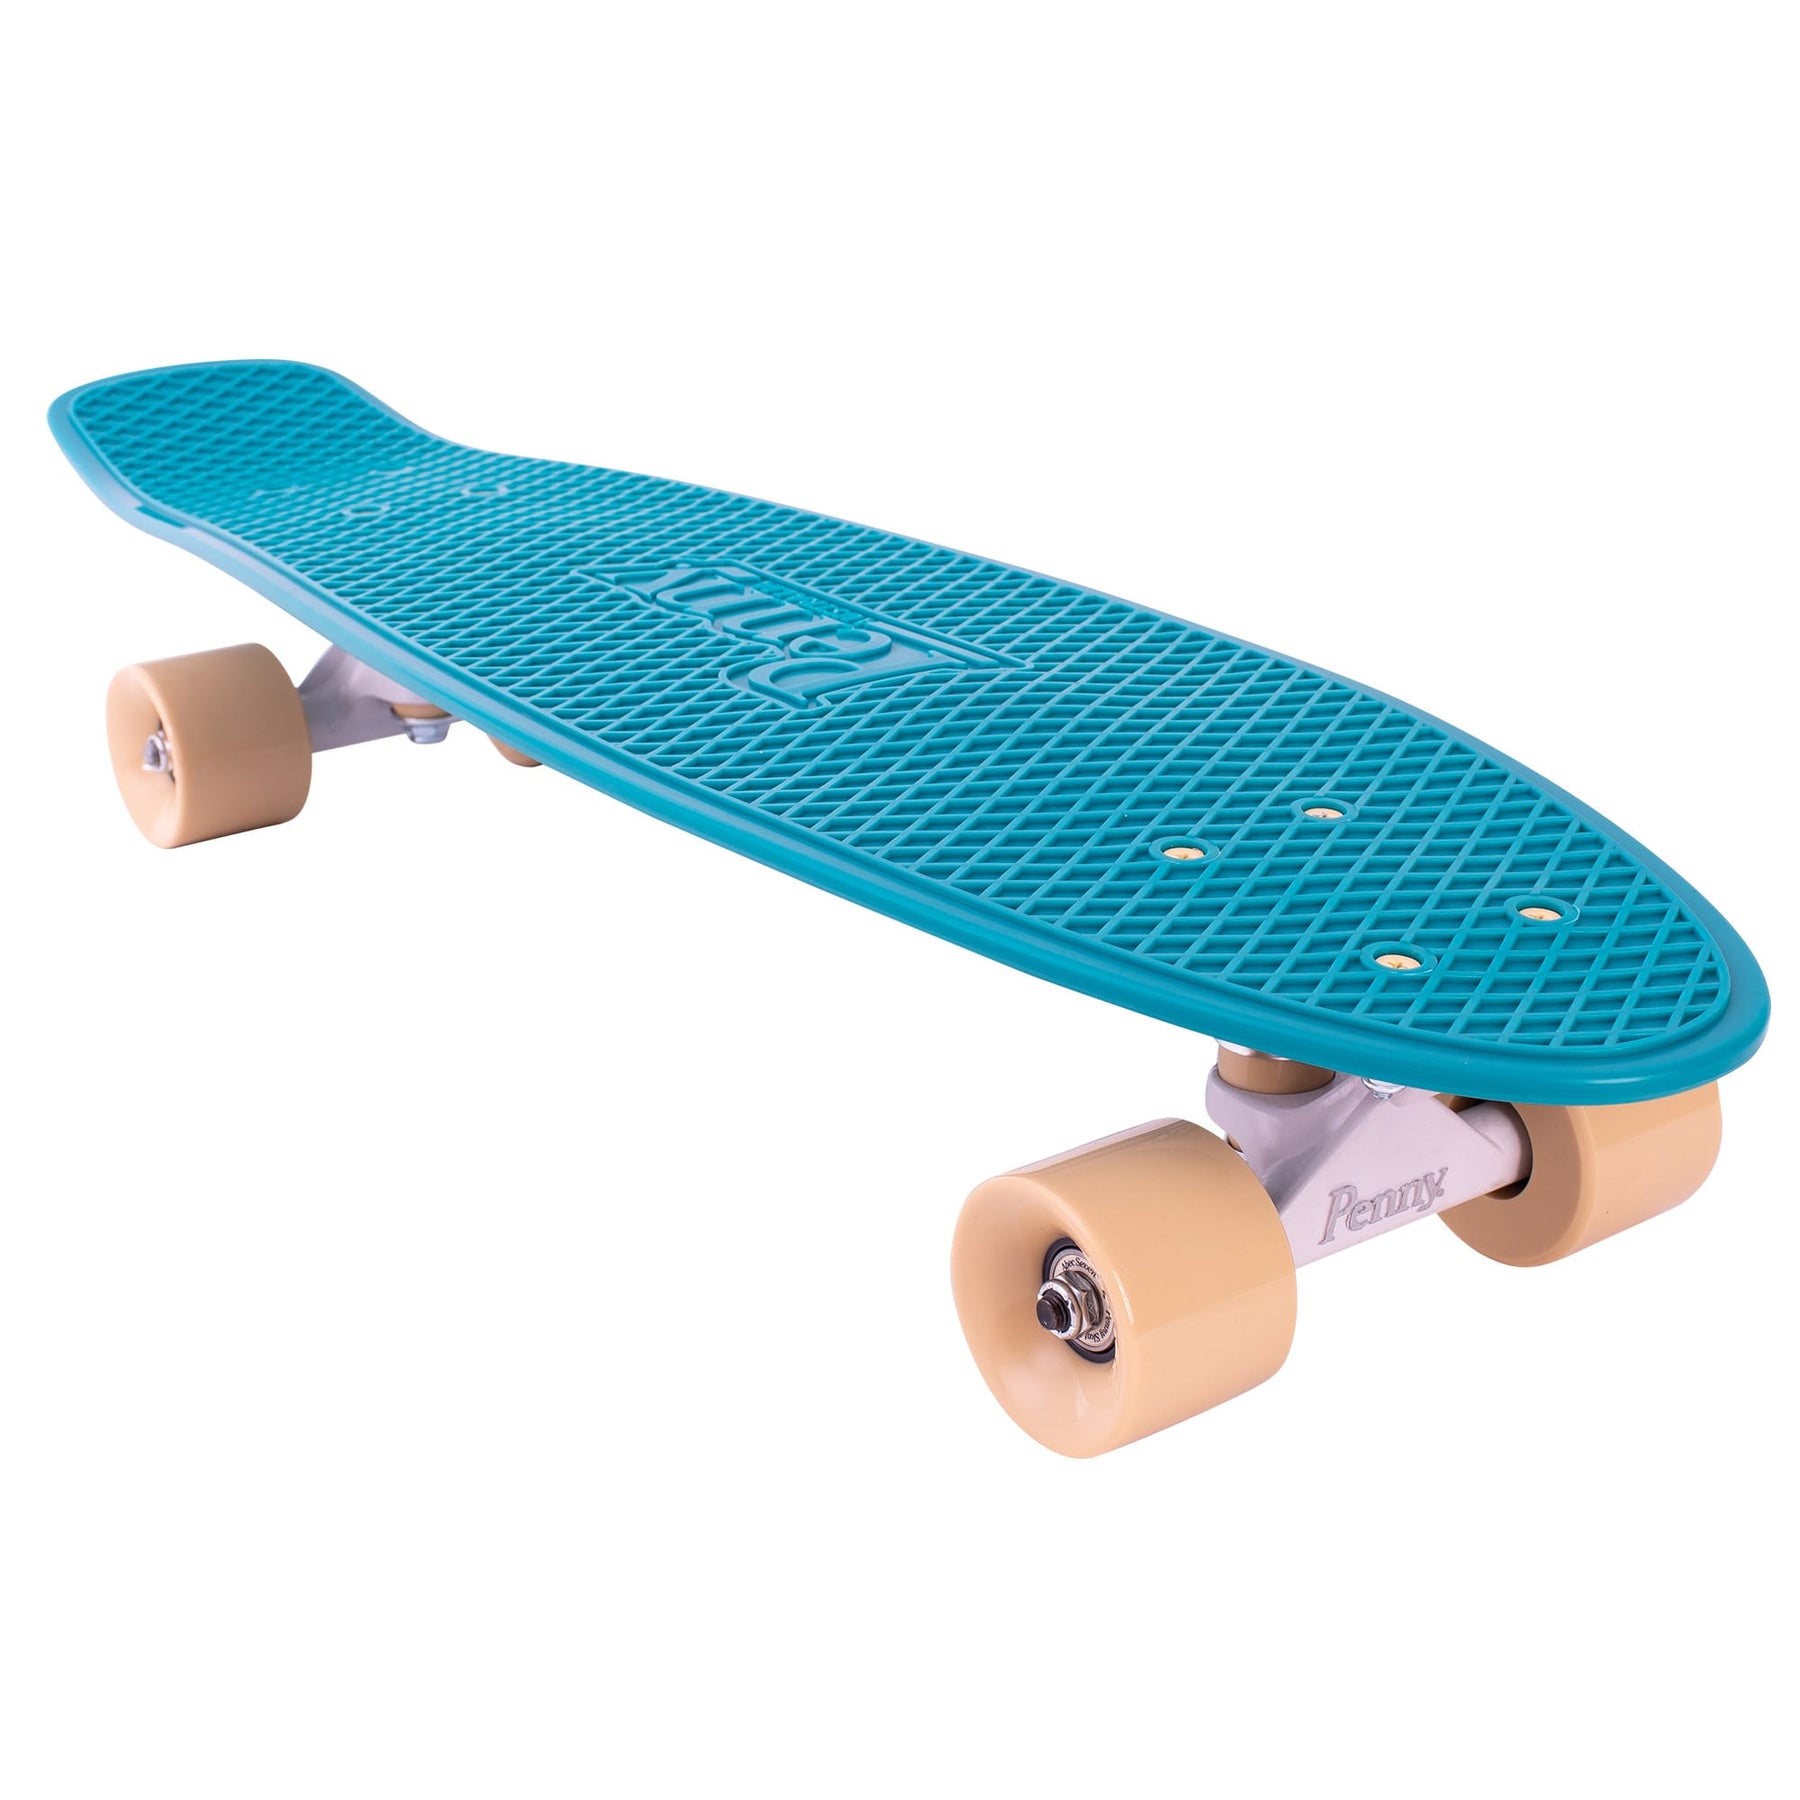 Ocean 27" Complete Cruiser Skateboard by Penny | Penny Board